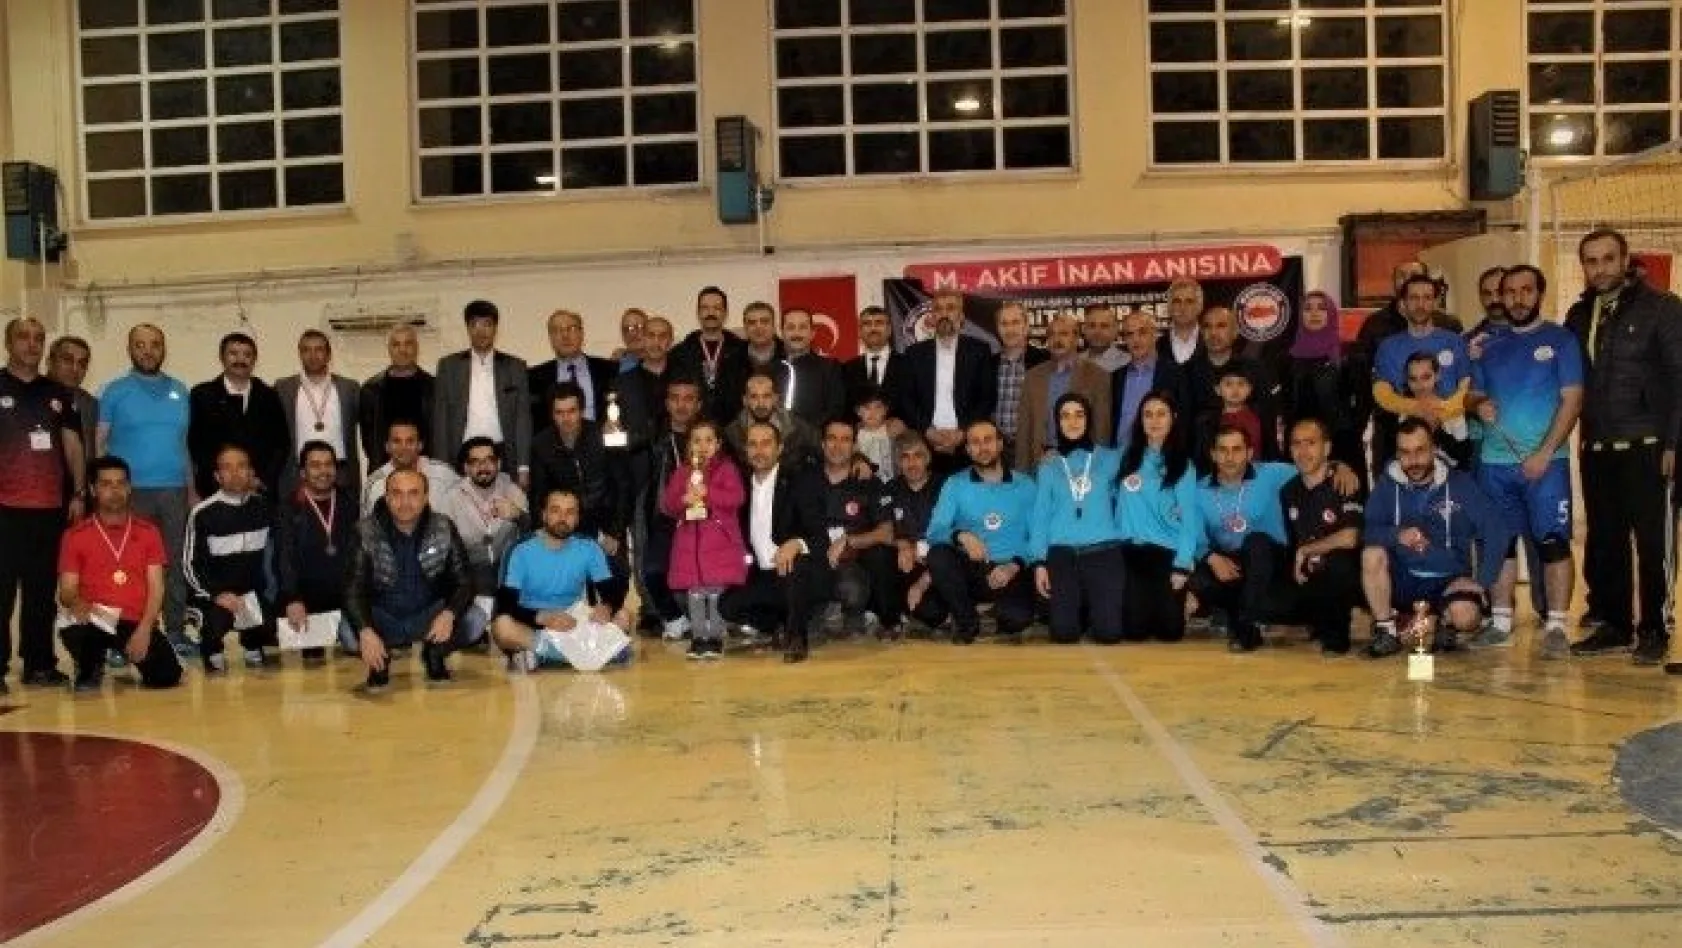 Şair Mehmet Akif İnan'ın anısına düzenlenen turnuva sona erdi